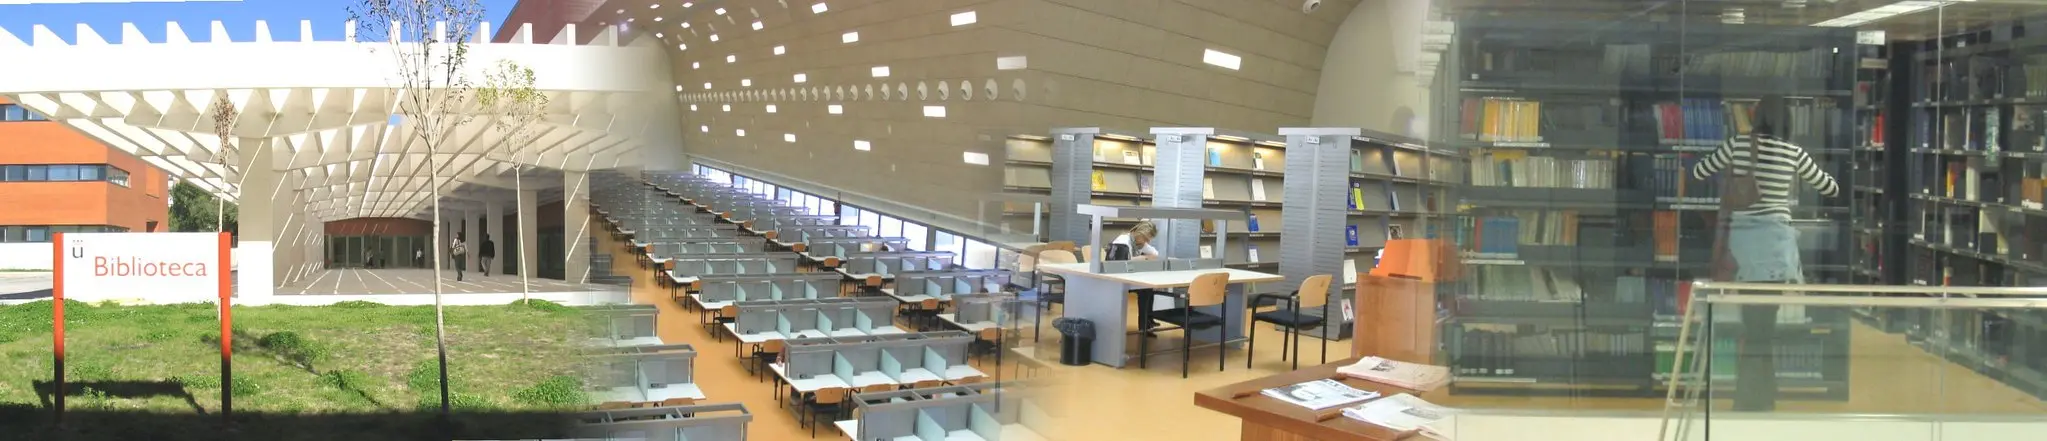 biblioteca del campus de vicálvaro - Cuántos documentos puede llevarse en préstamo un alumno URJC